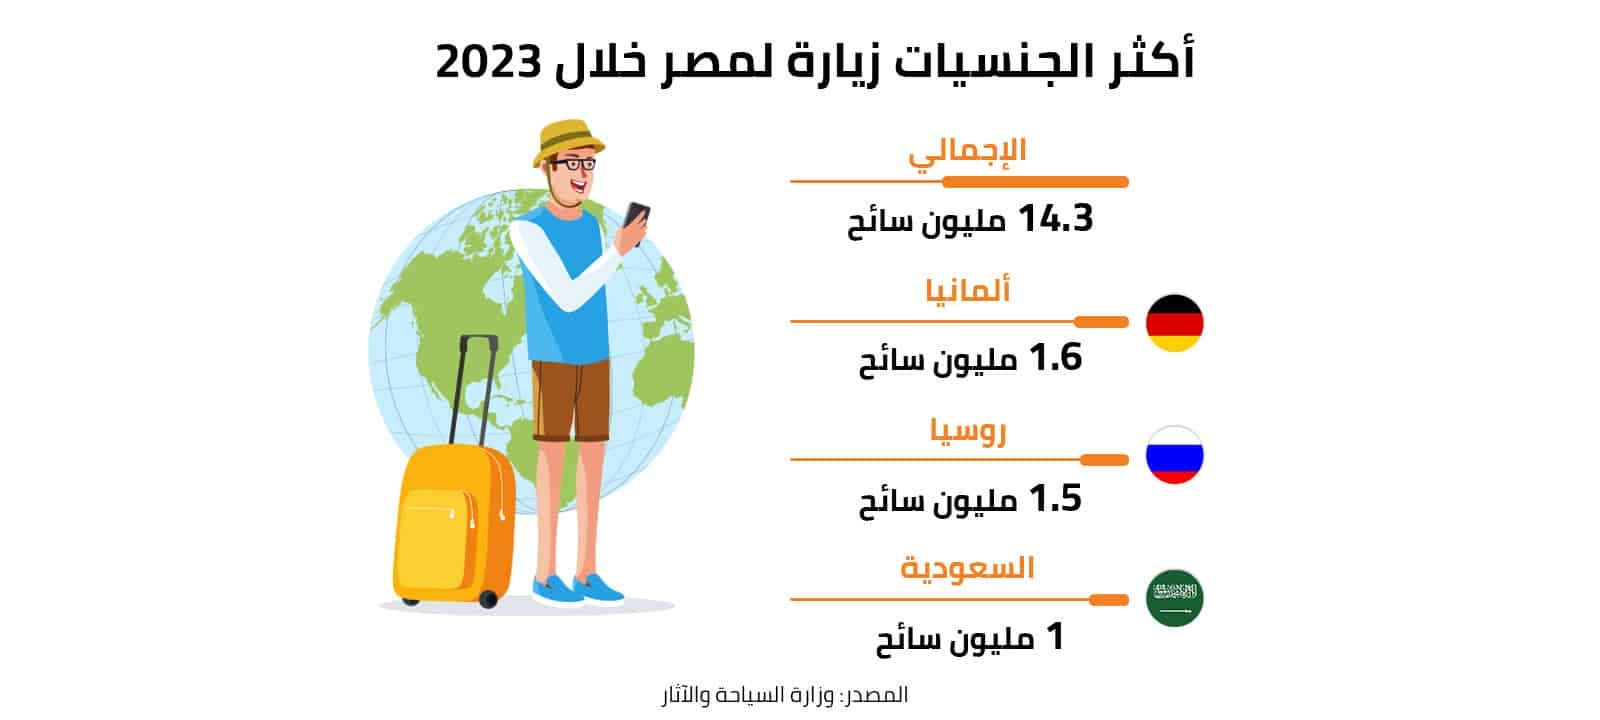 أكثر الجنسيات زيارة لمصر خلال 2023